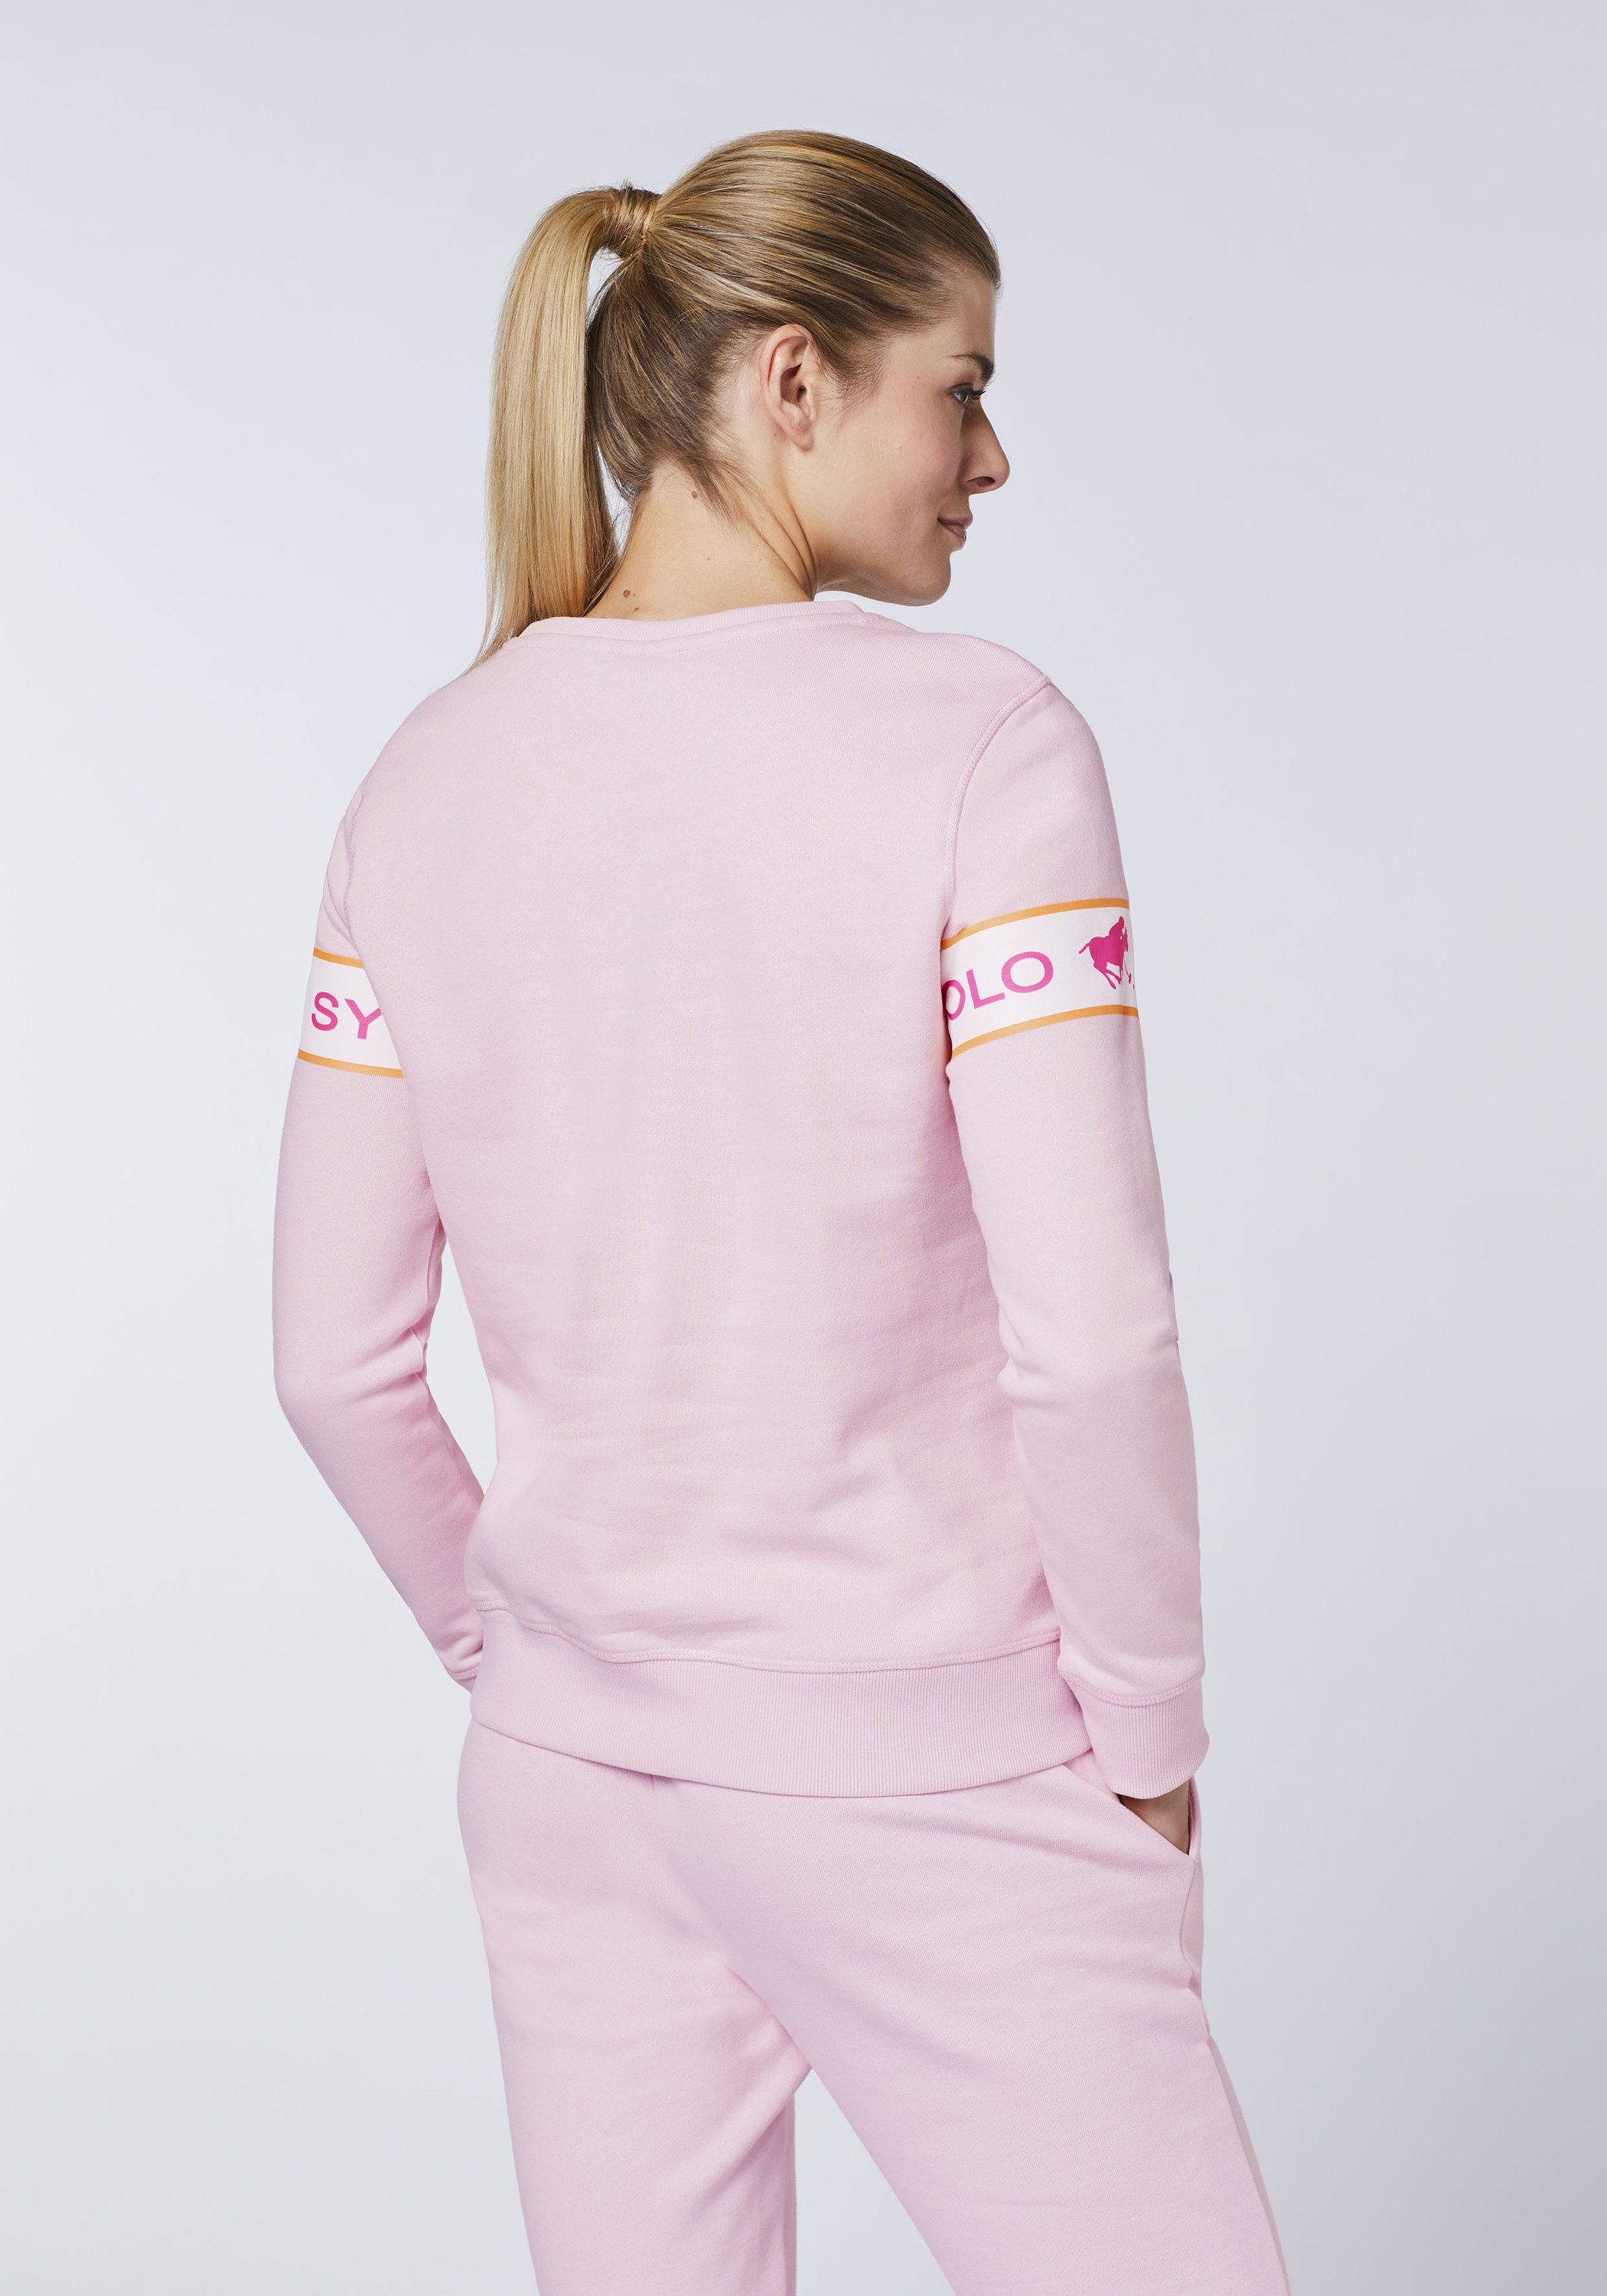 Lady Sylt Sweatshirt mit eingearbeitetem Pink 13-2806 Logo-Kontraststreifen Polo